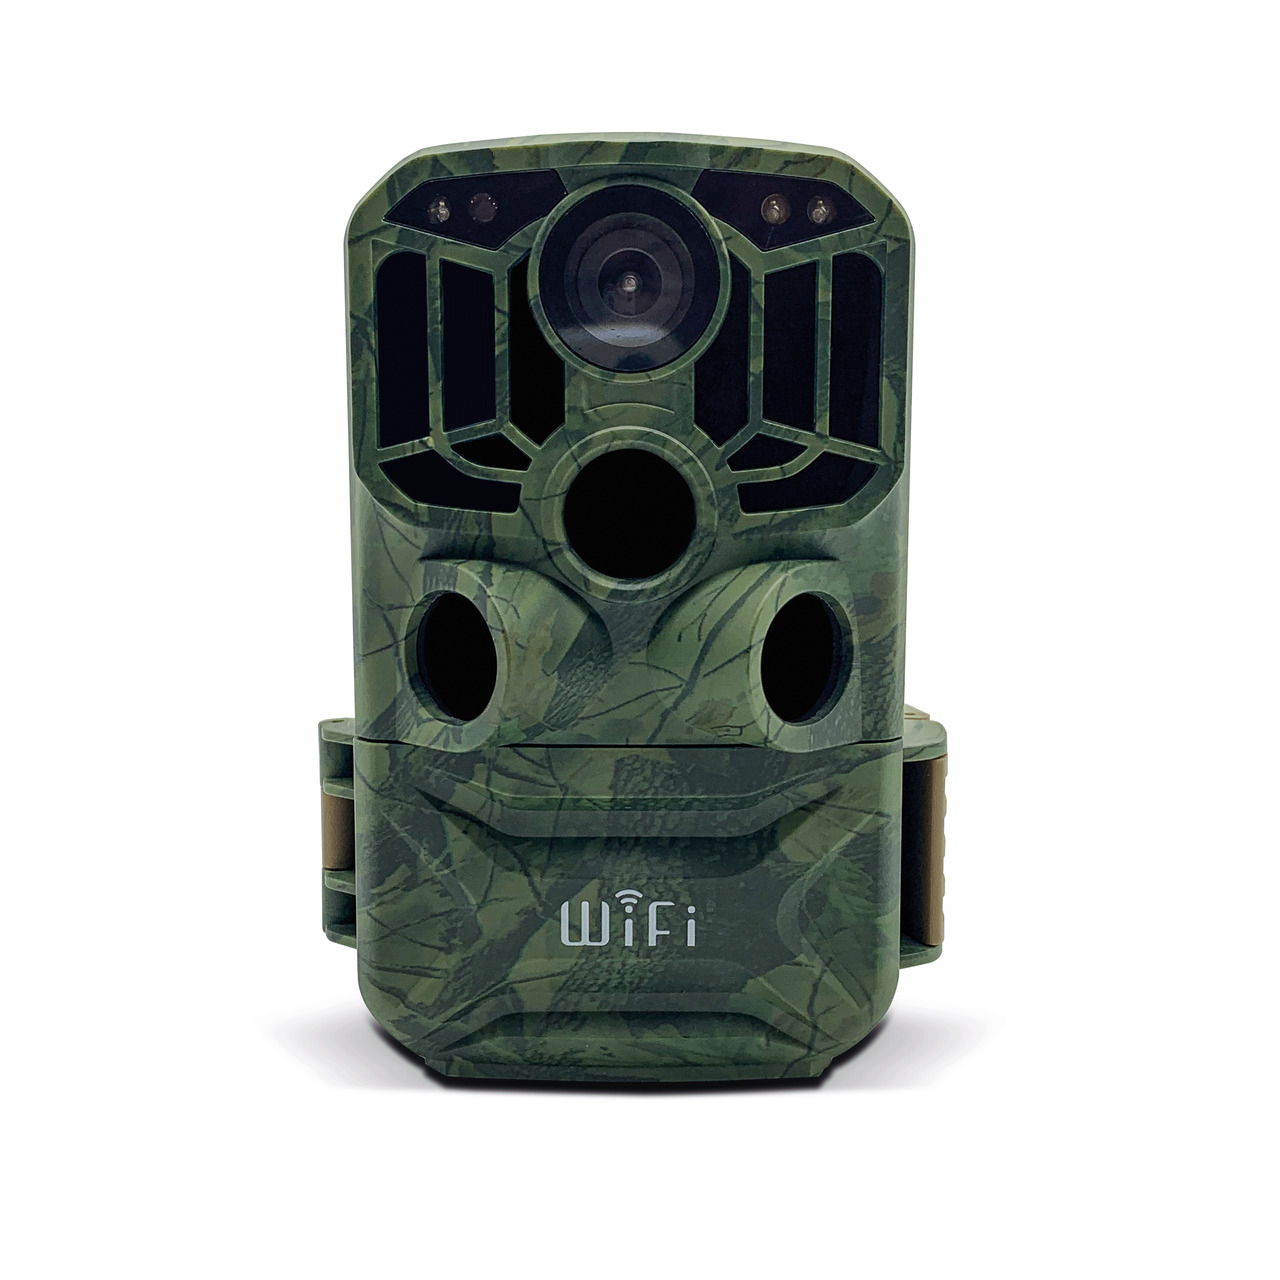 Braun Fotofalle - Wildkamera Scouting Cam BLACK800 WiFi- Auslsezeit 0-6 s- IP66 unter Sicherheitstechnik